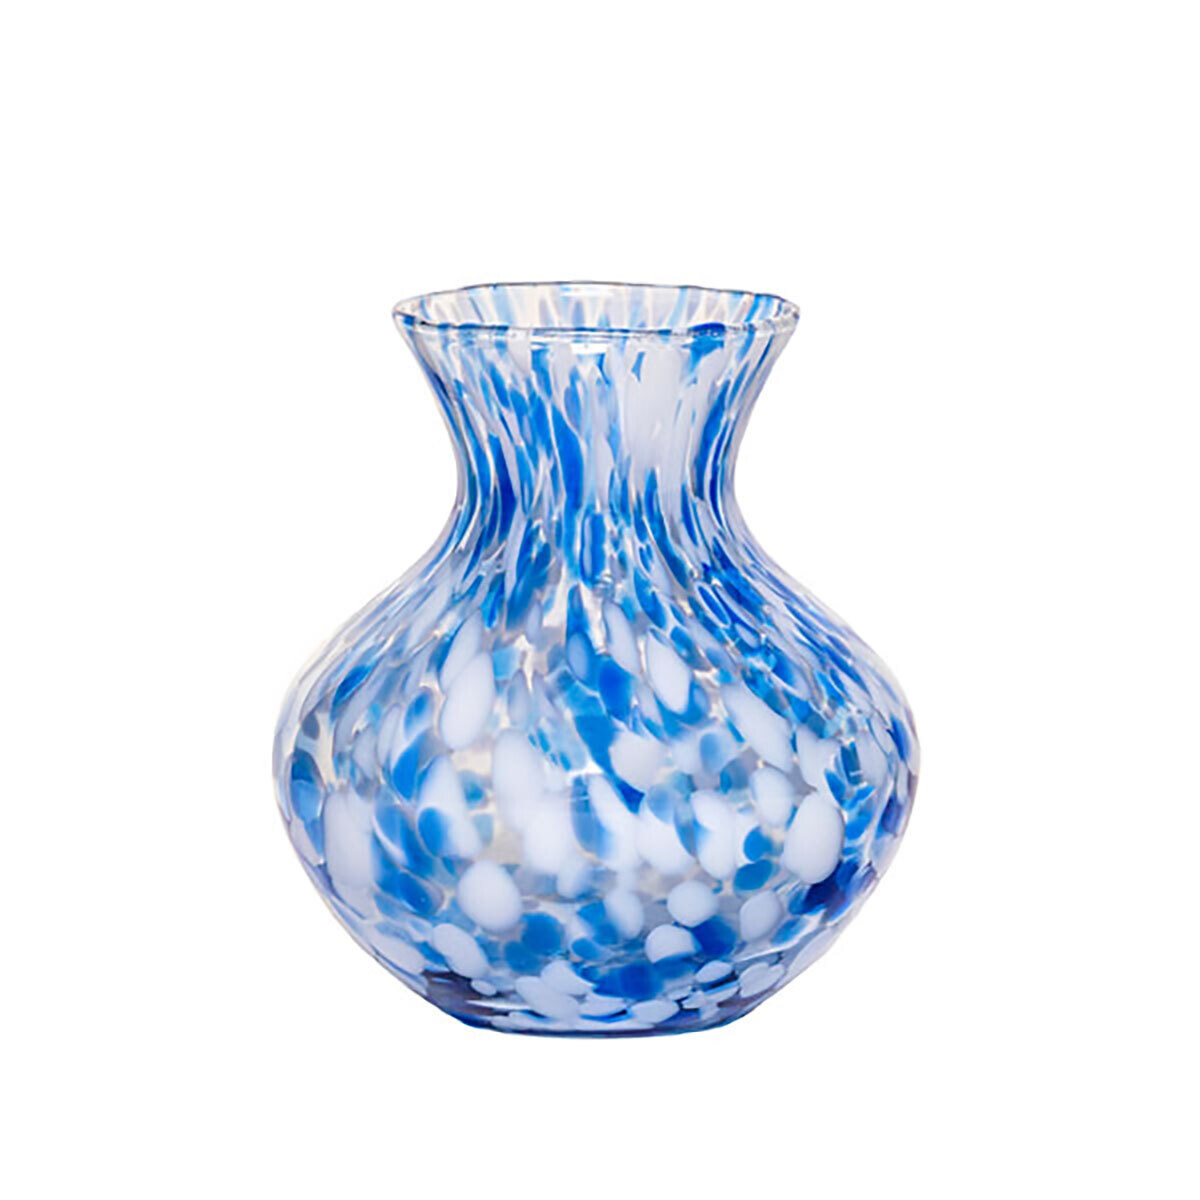 Juliska Puro 6 Inch Vase Blue PG117/47